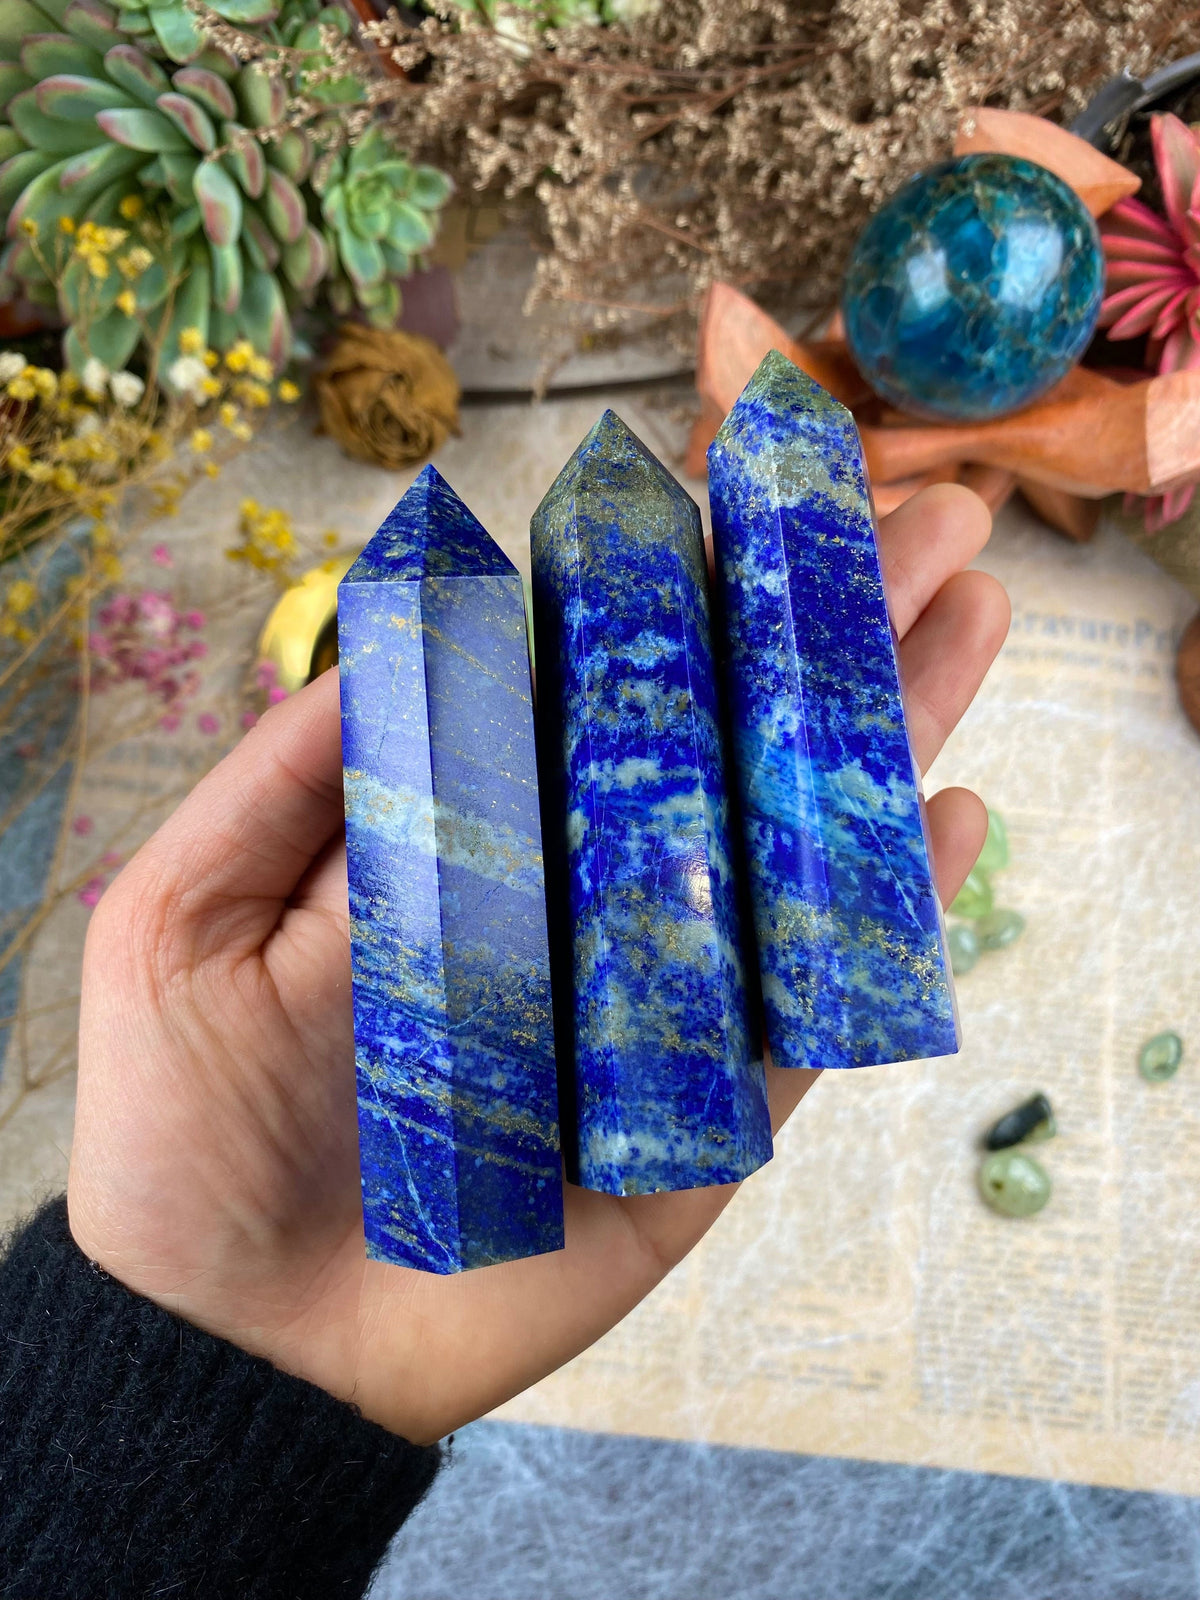 Lapis Lazuli tower Healing Home Decor Crystal Natural Lapis Lazuli